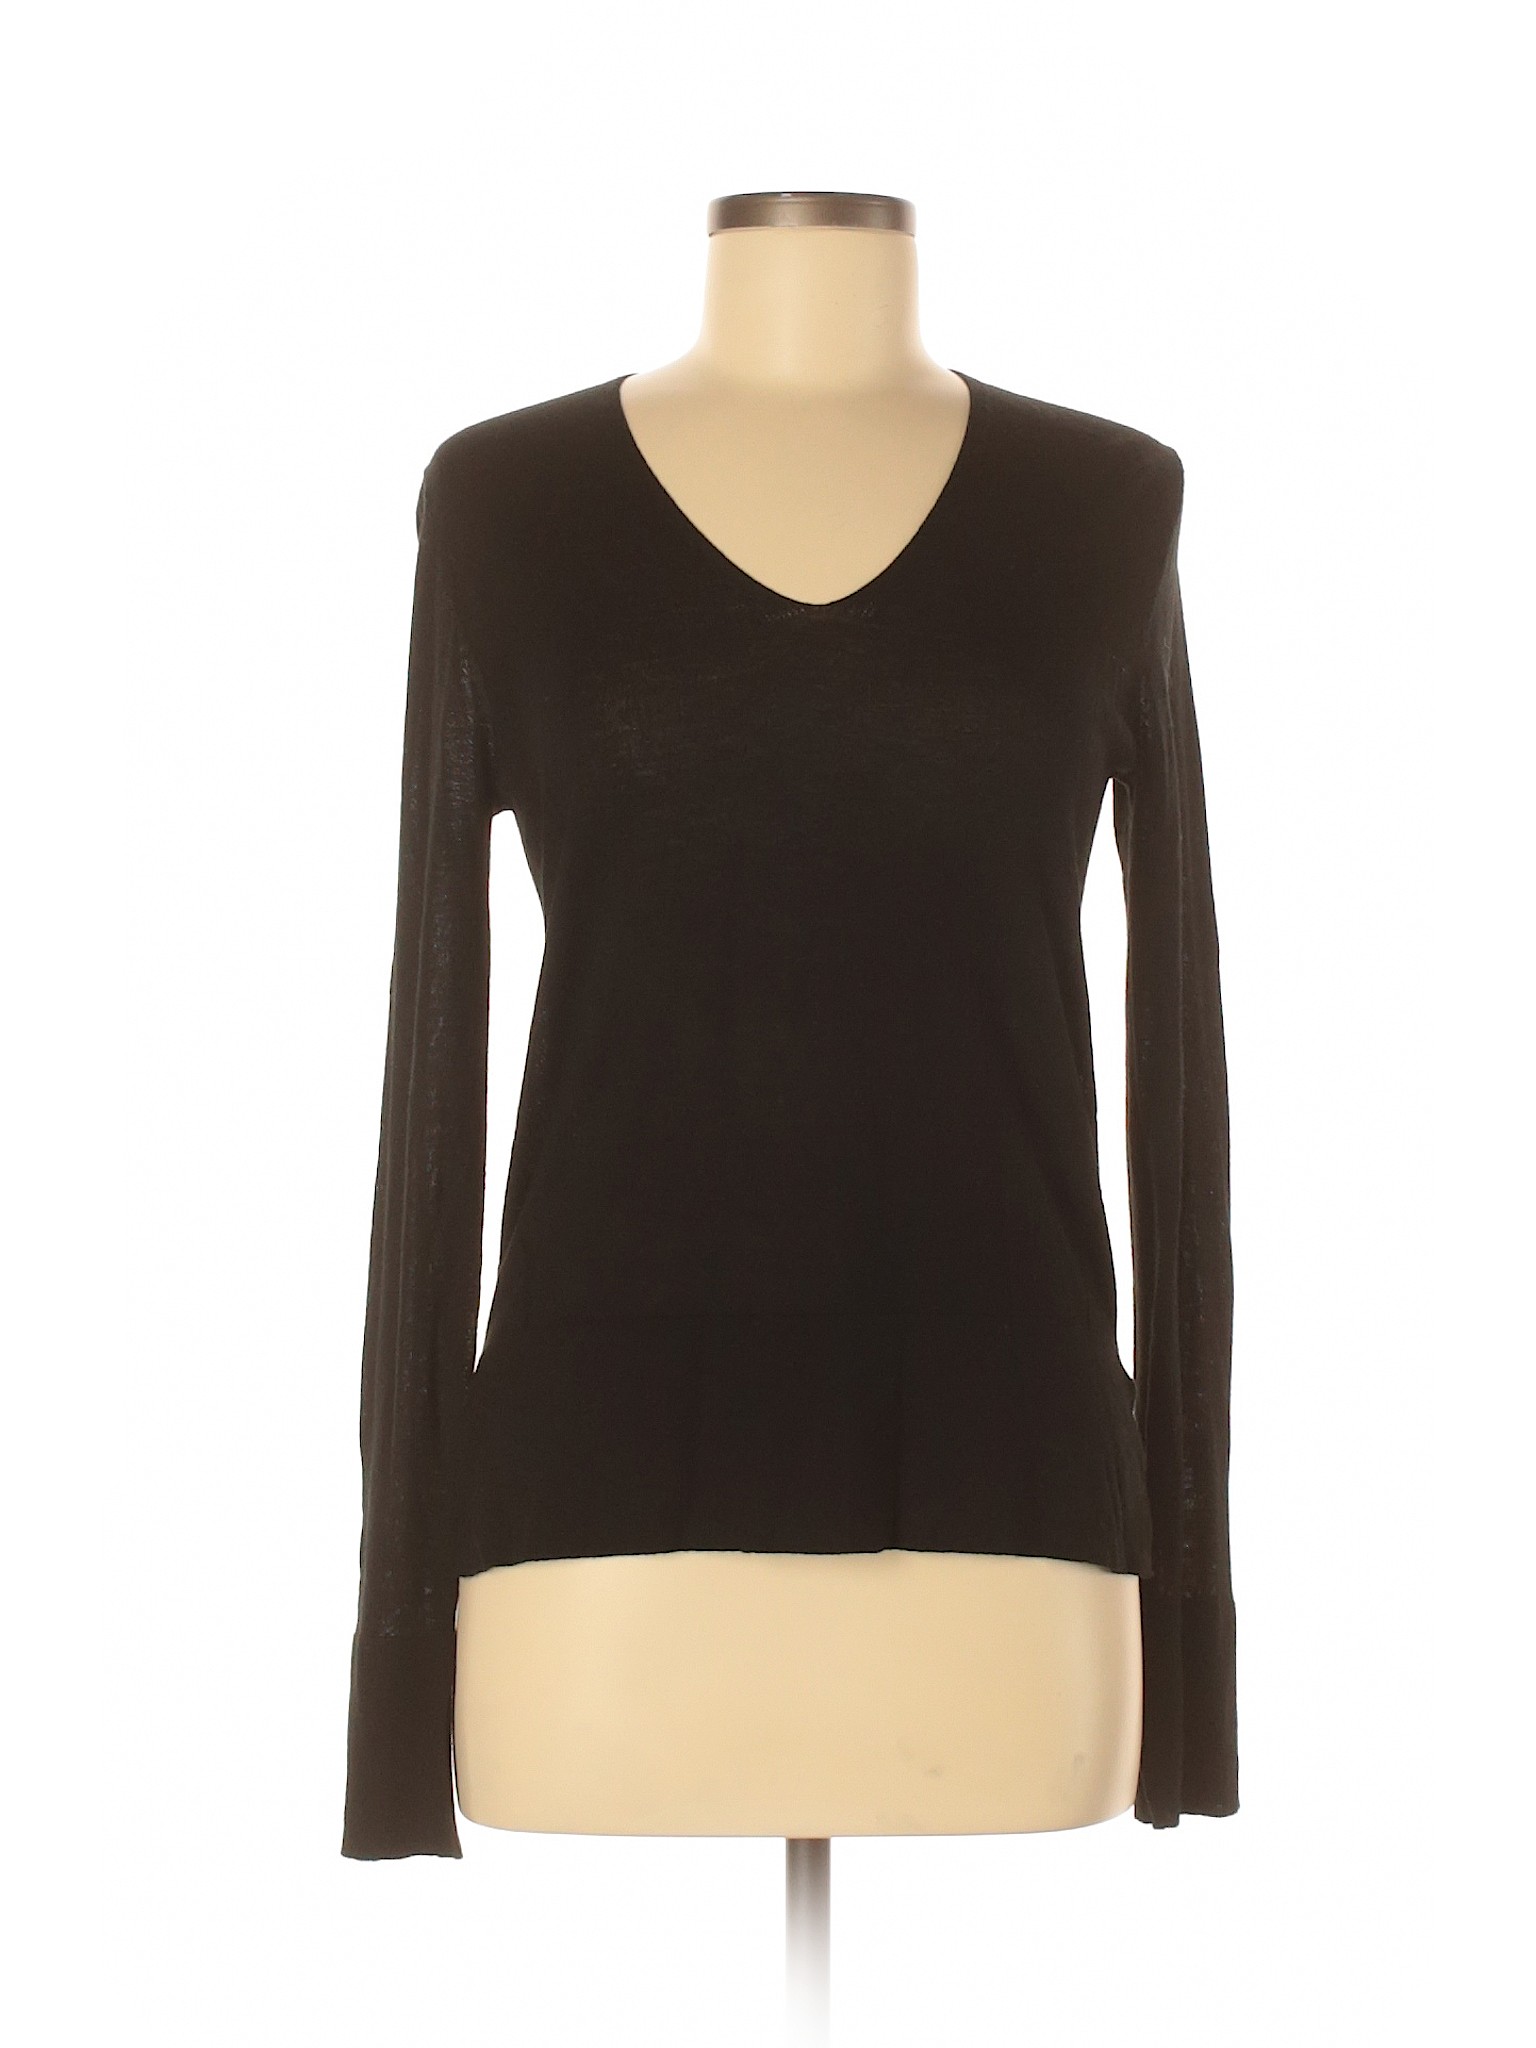 Zara Women Brown Long Sleeve Top XS | eBay